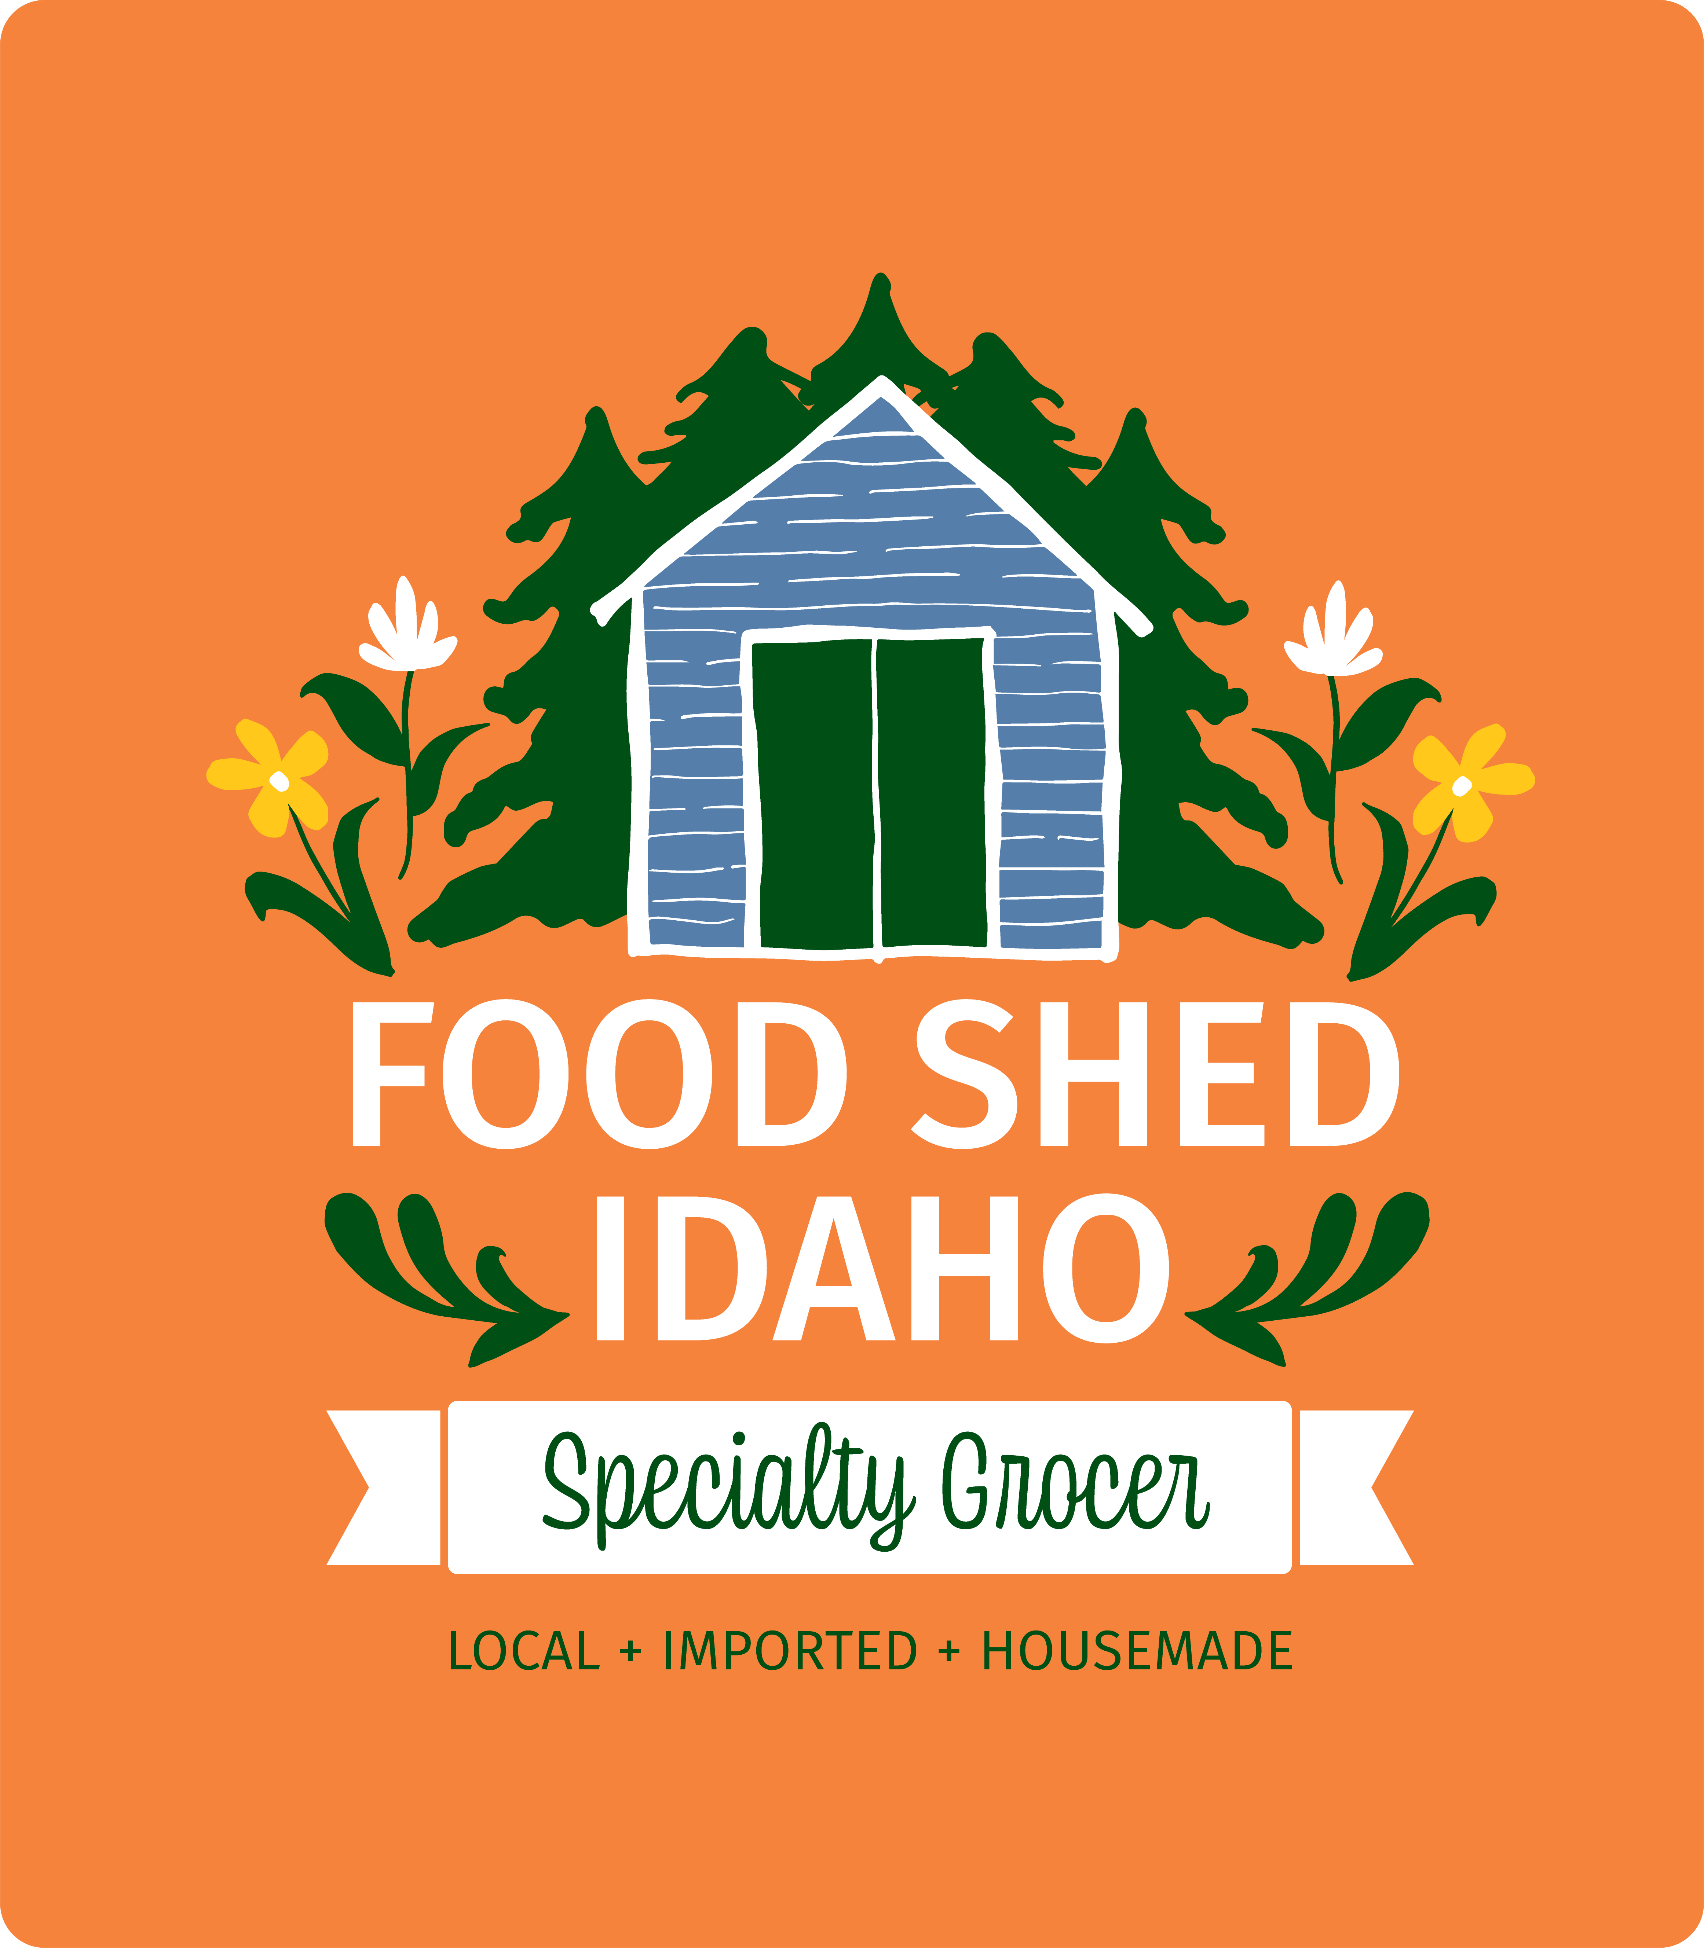 Food Shed Idaho